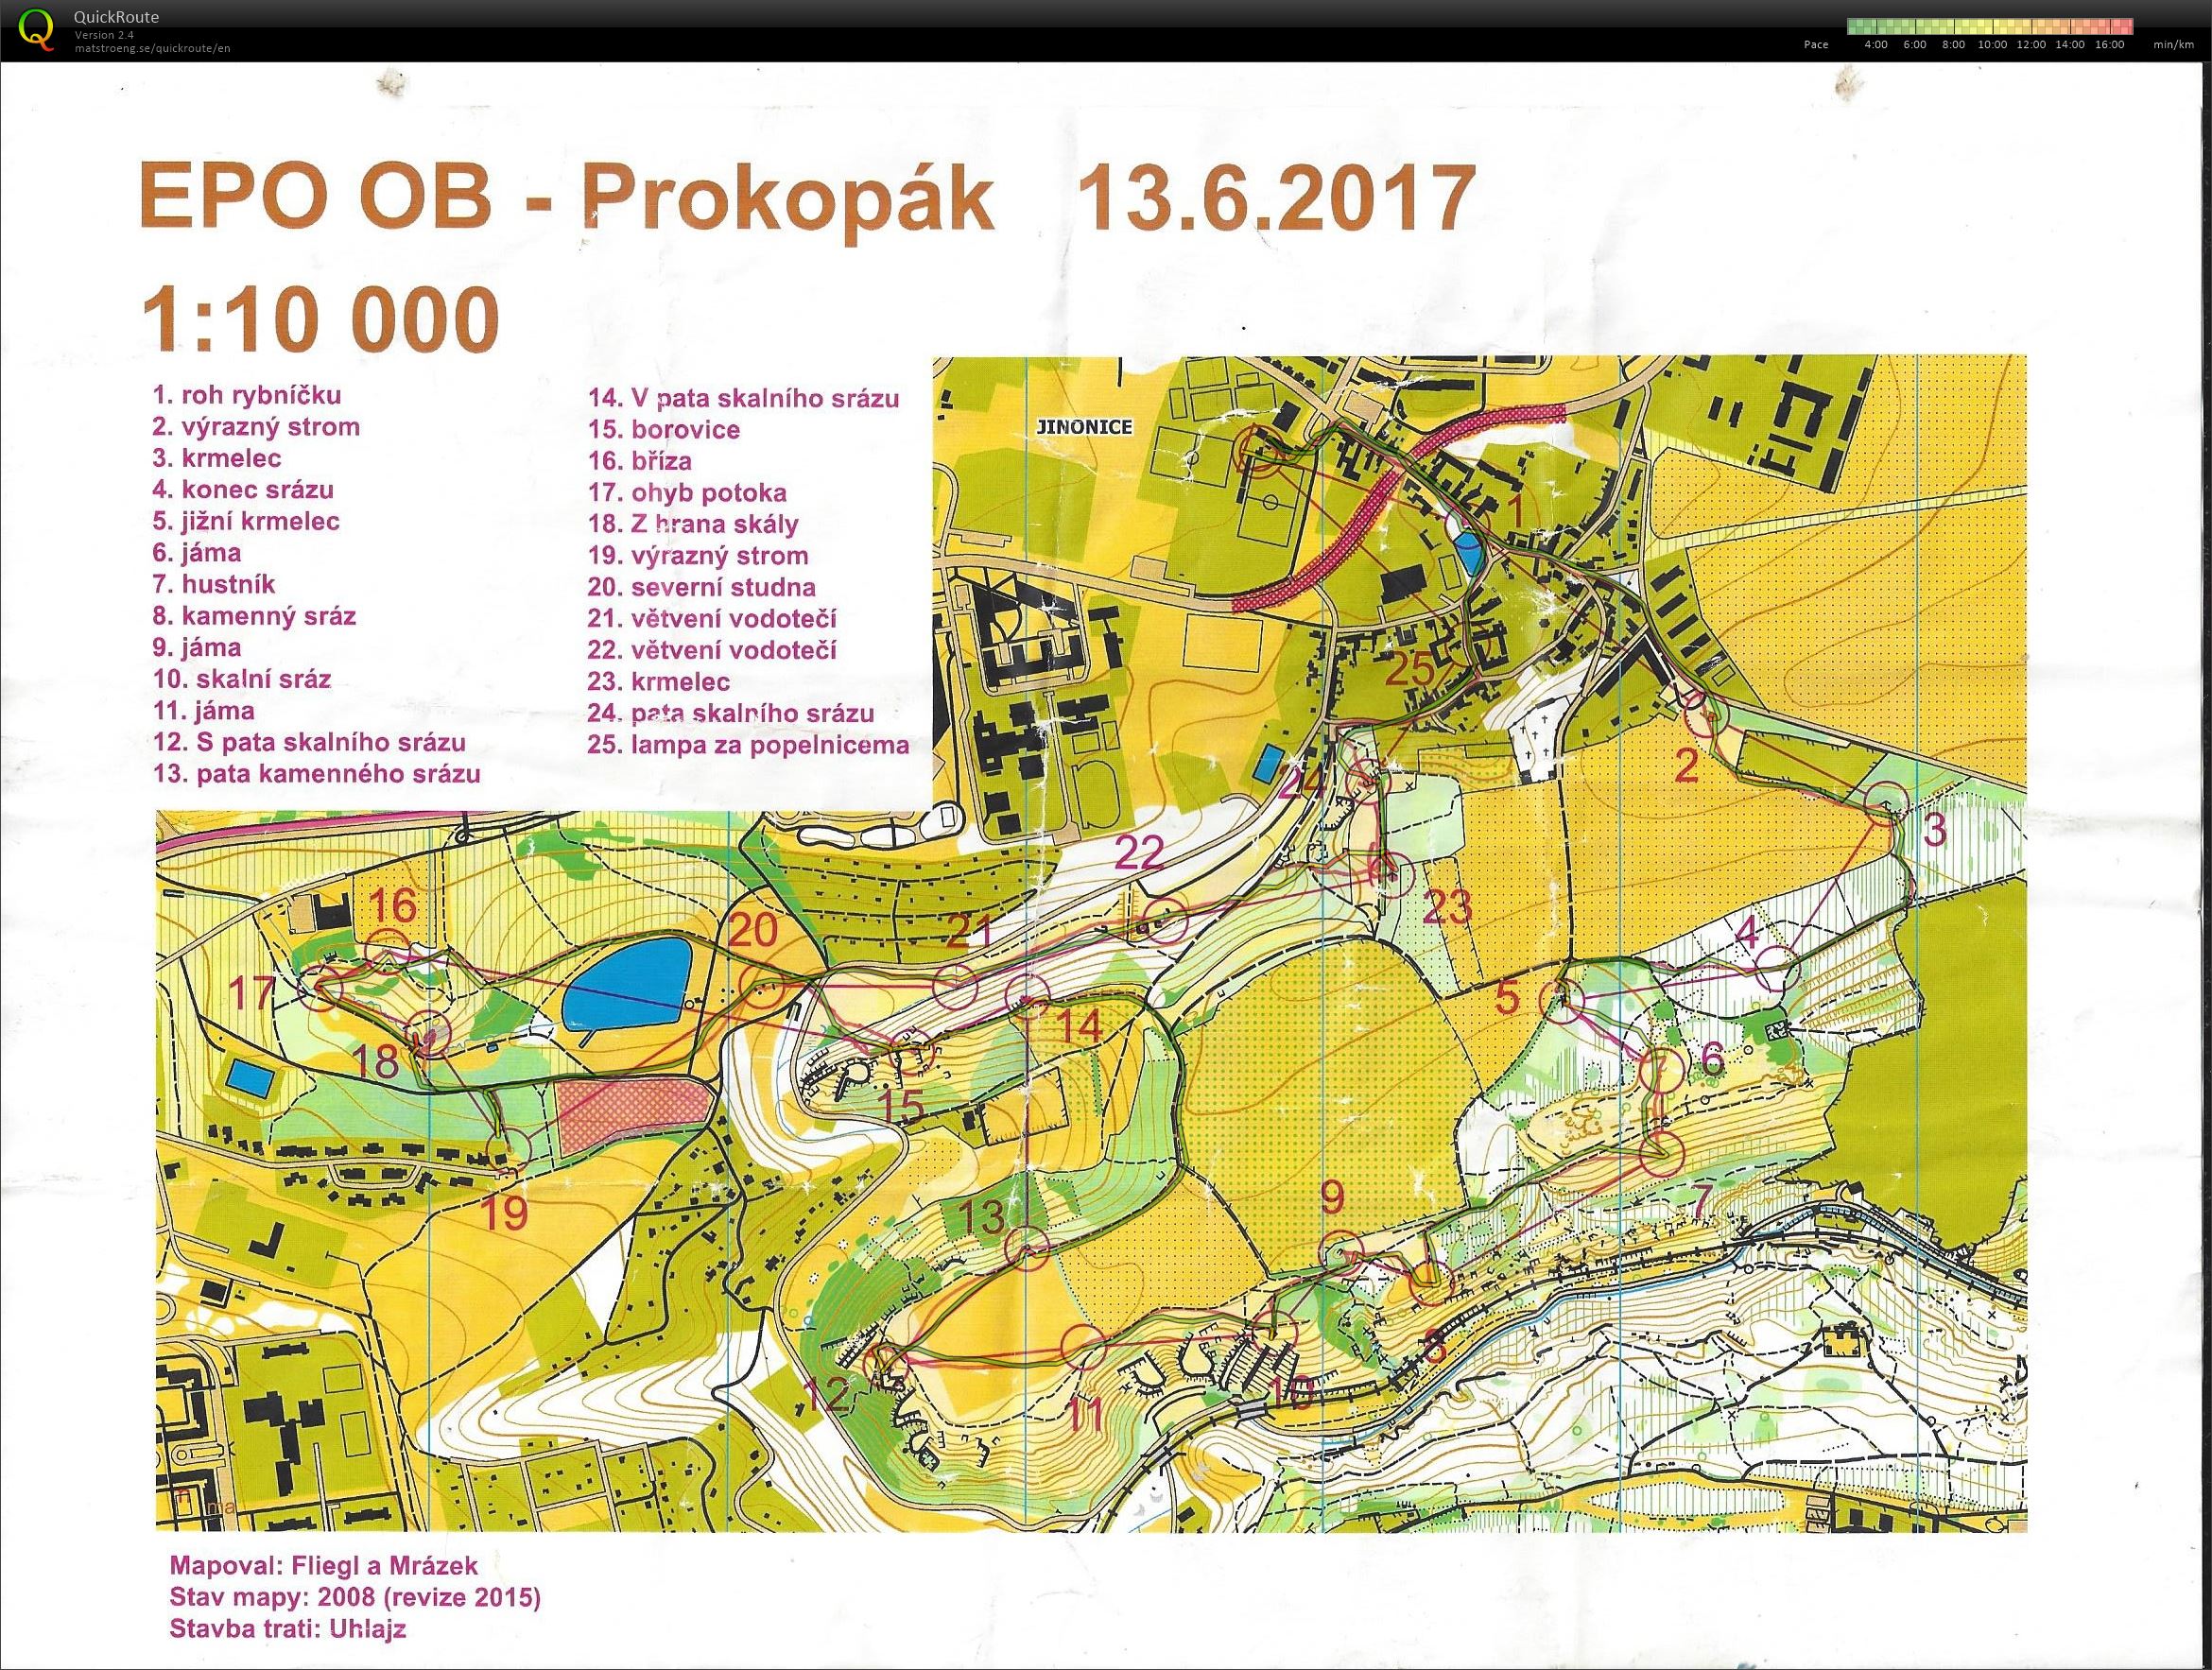 EPO OB - Prokopák (13/06/2017)